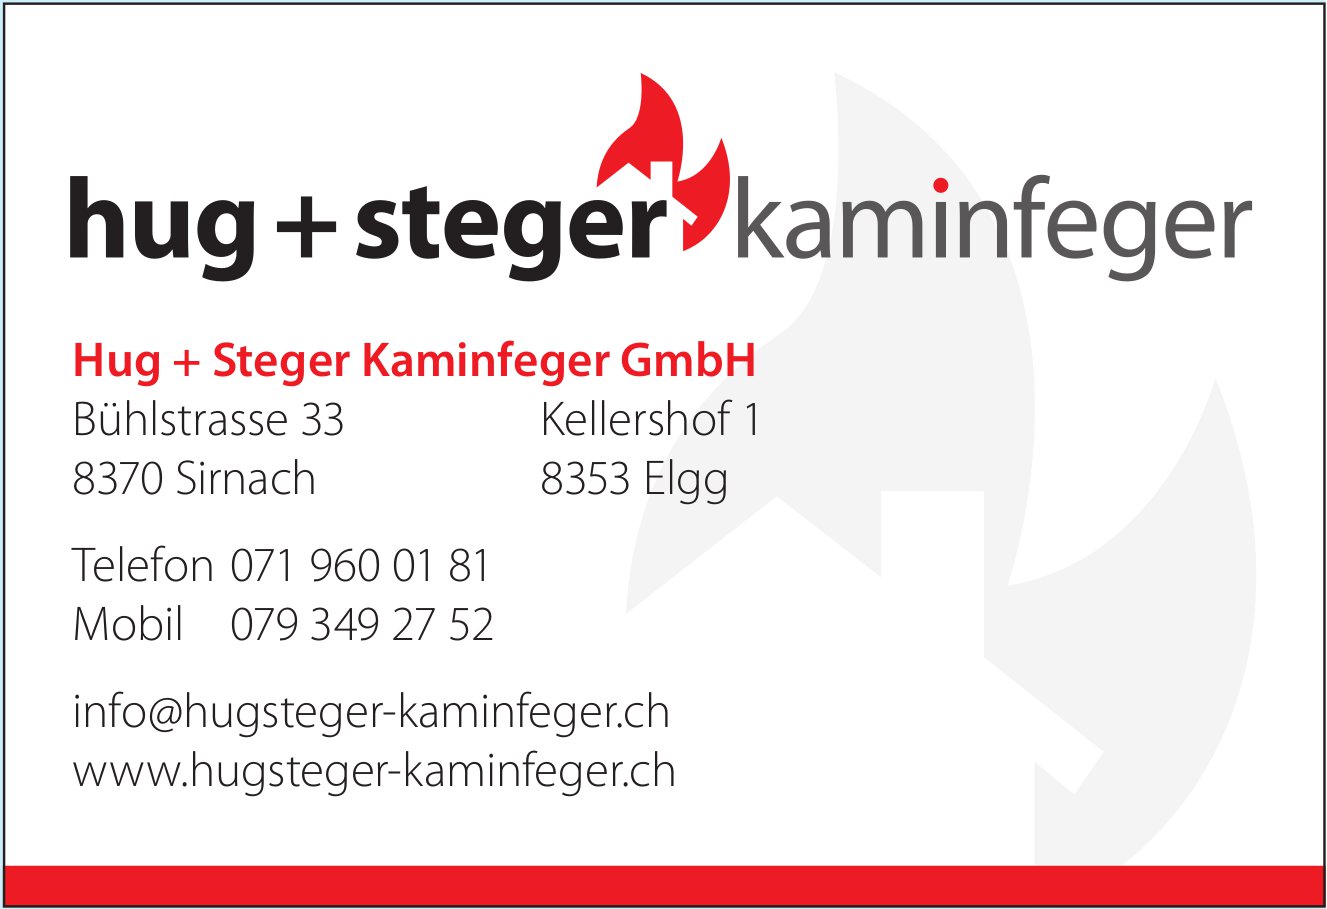 Hug + Steger Kaminfeger GmbH, Sirnach und Elgg